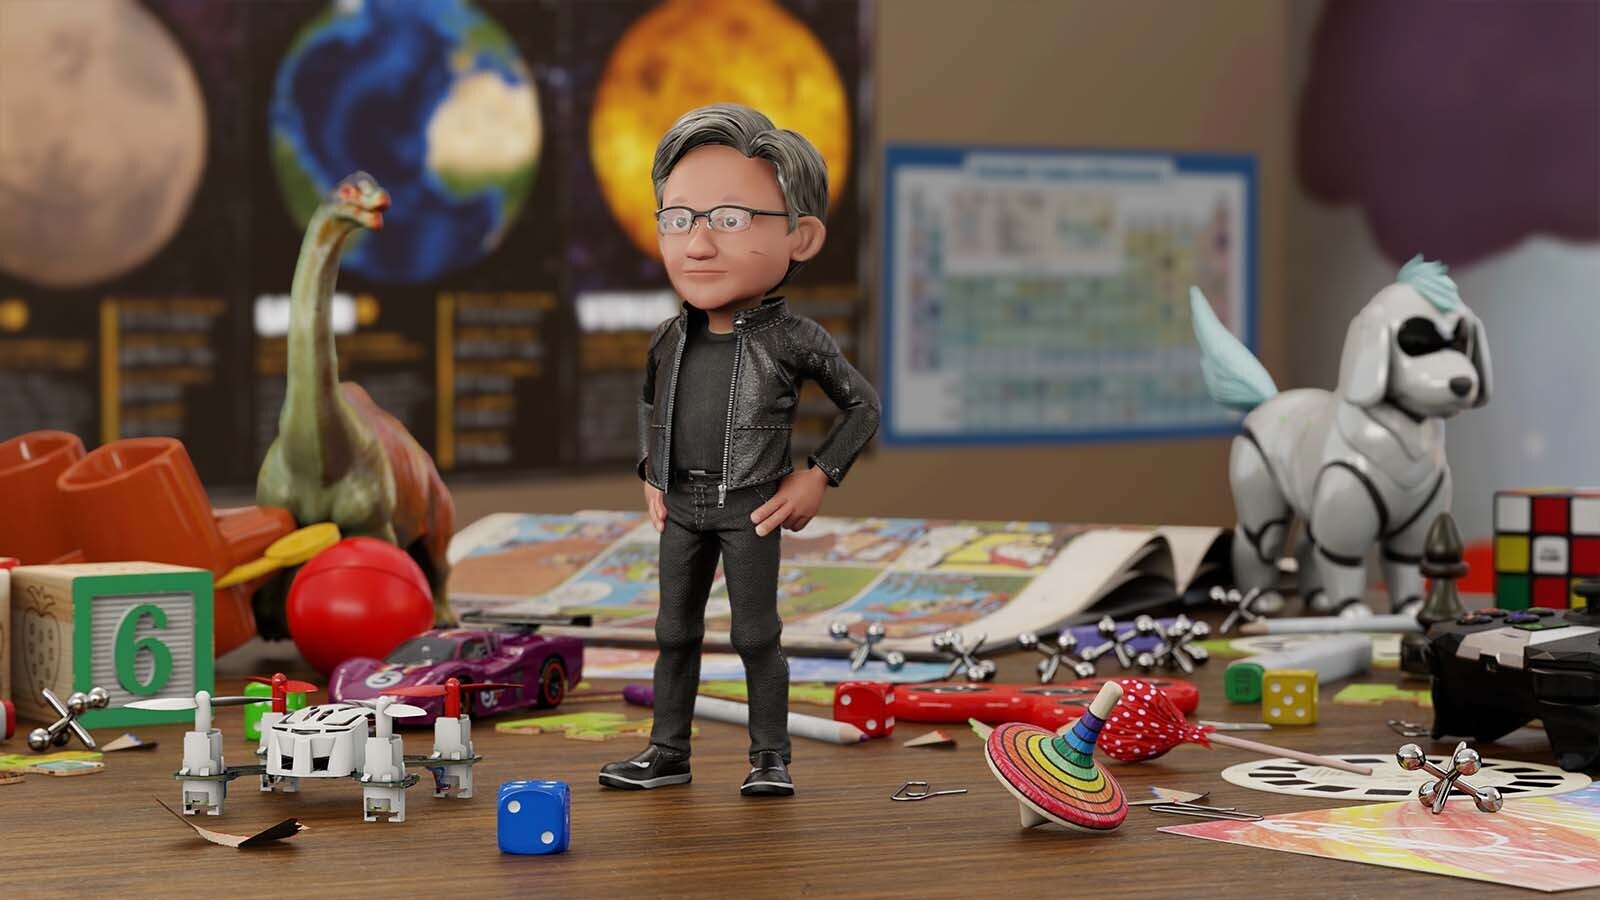 NVIDIA crée un avatar à l'effigie de son P.-D.G. pour faire une démo de ses avancées en intelligence artificielle